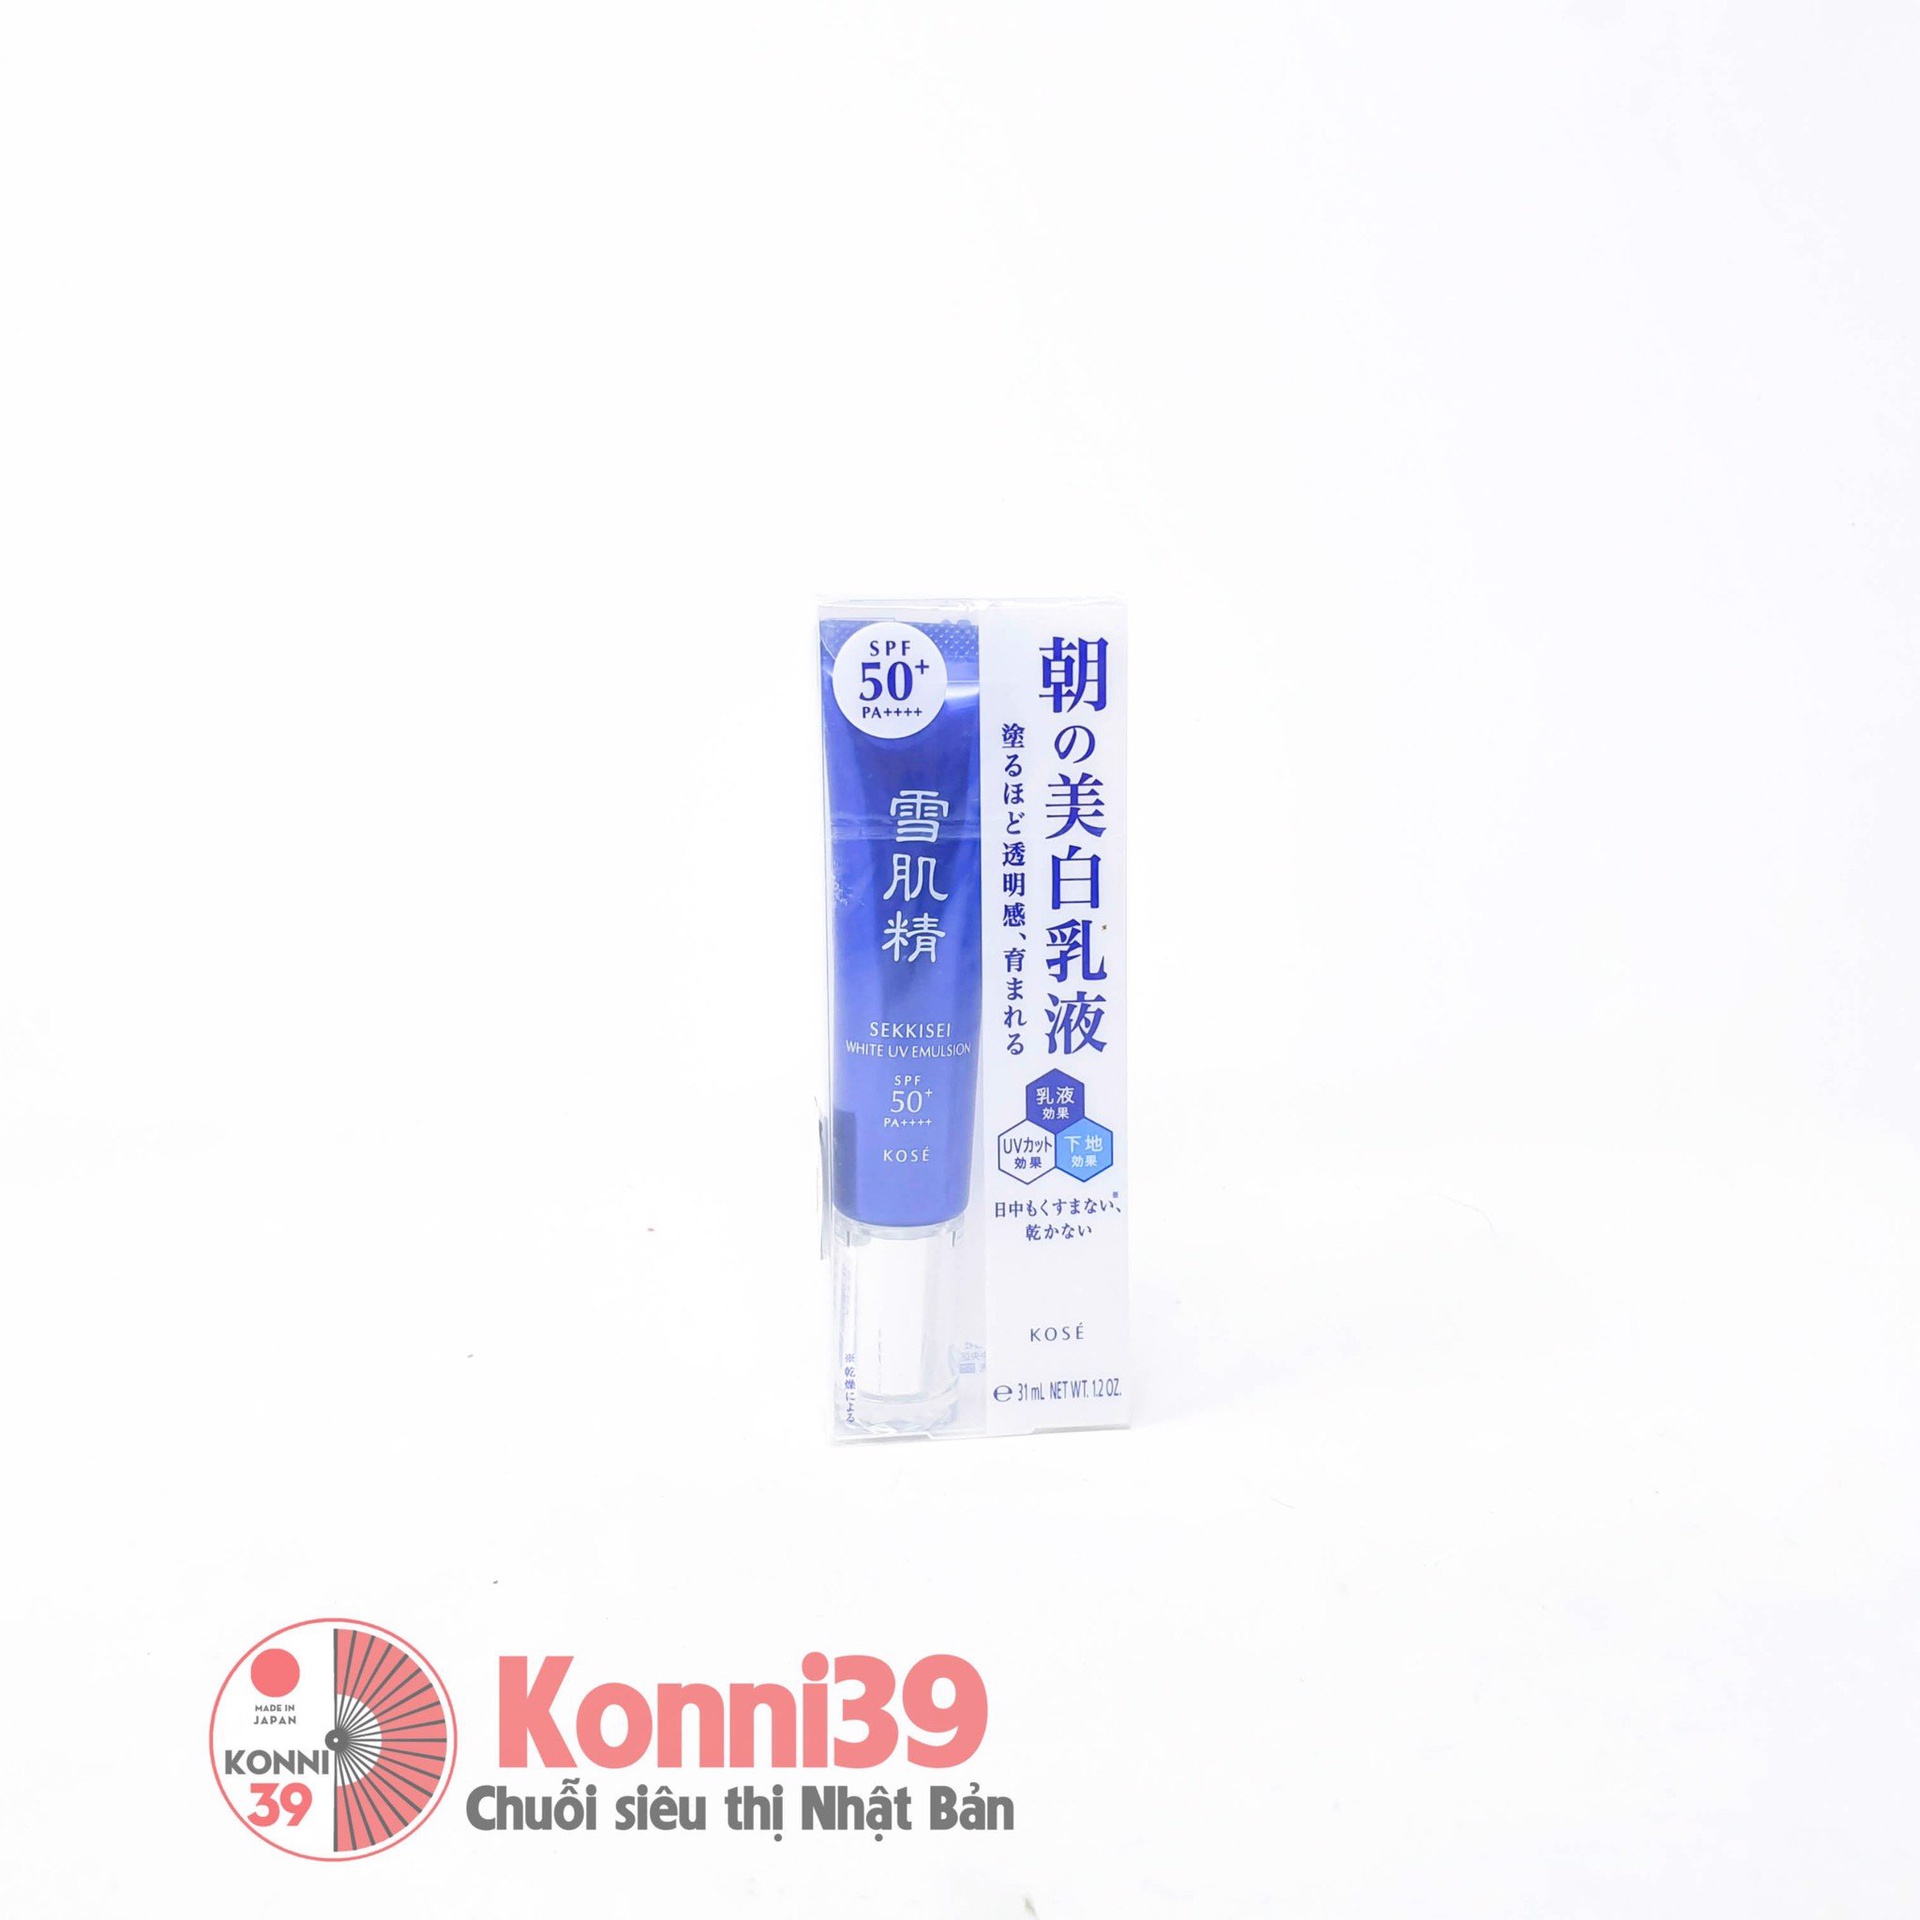 Kem dưỡng ẩm Kose Sekkisei White UV Emulsion trắng da SPF50+PA++++ 35g